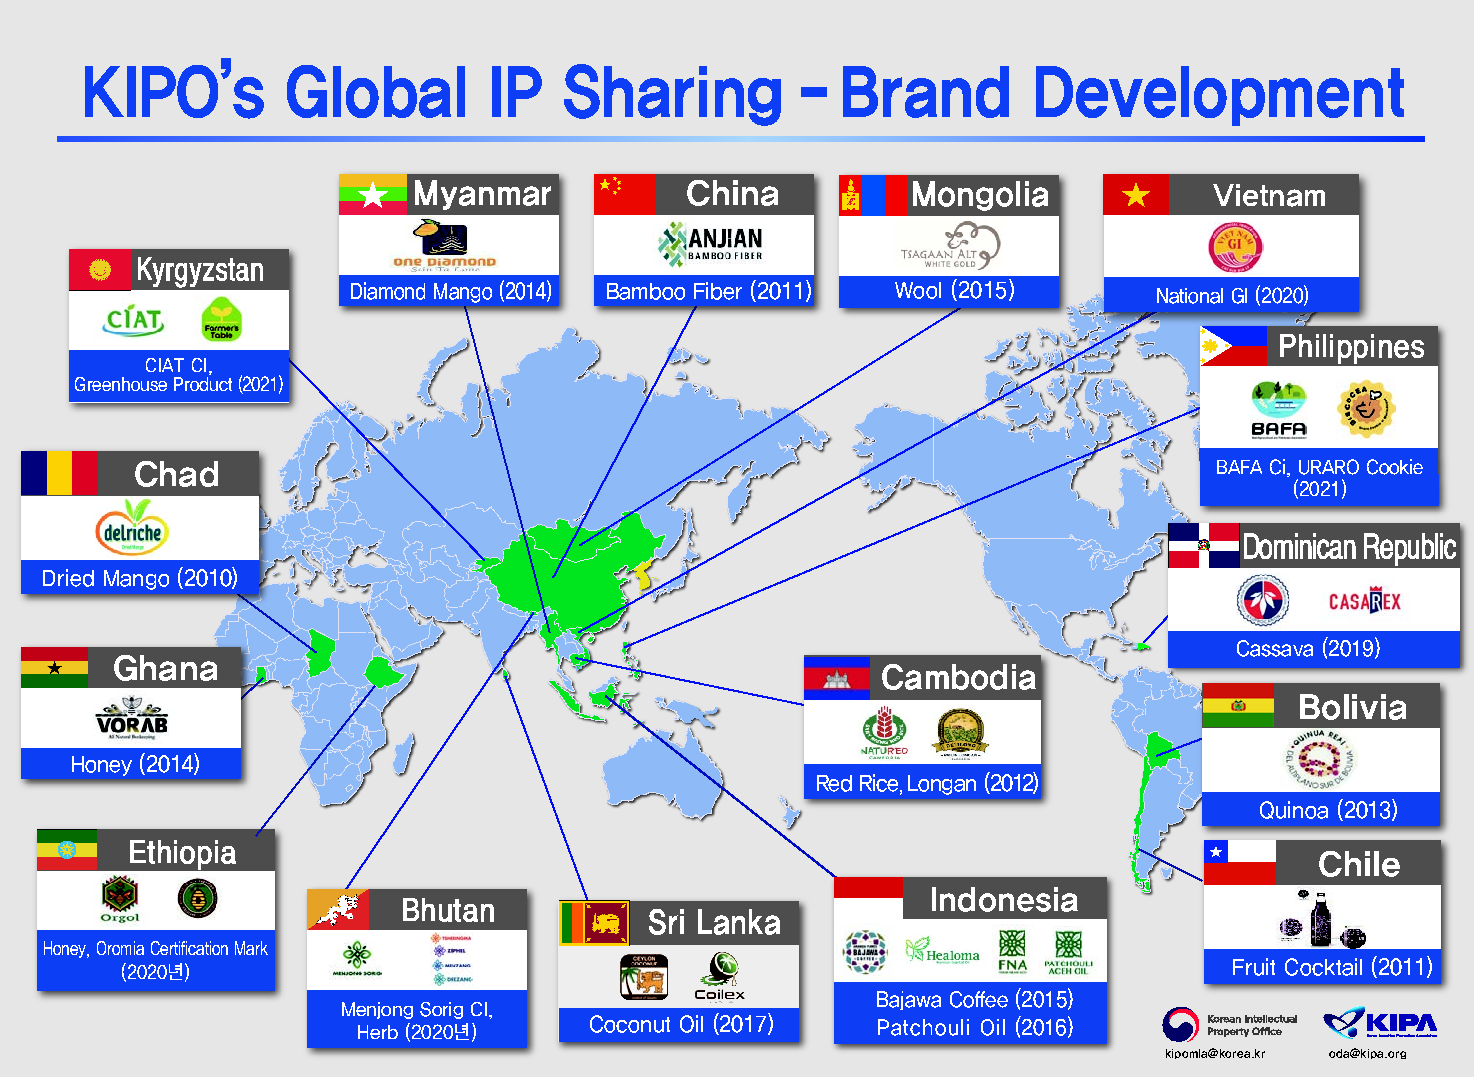 브랜드 개발(13개국, 20개 브랜드)